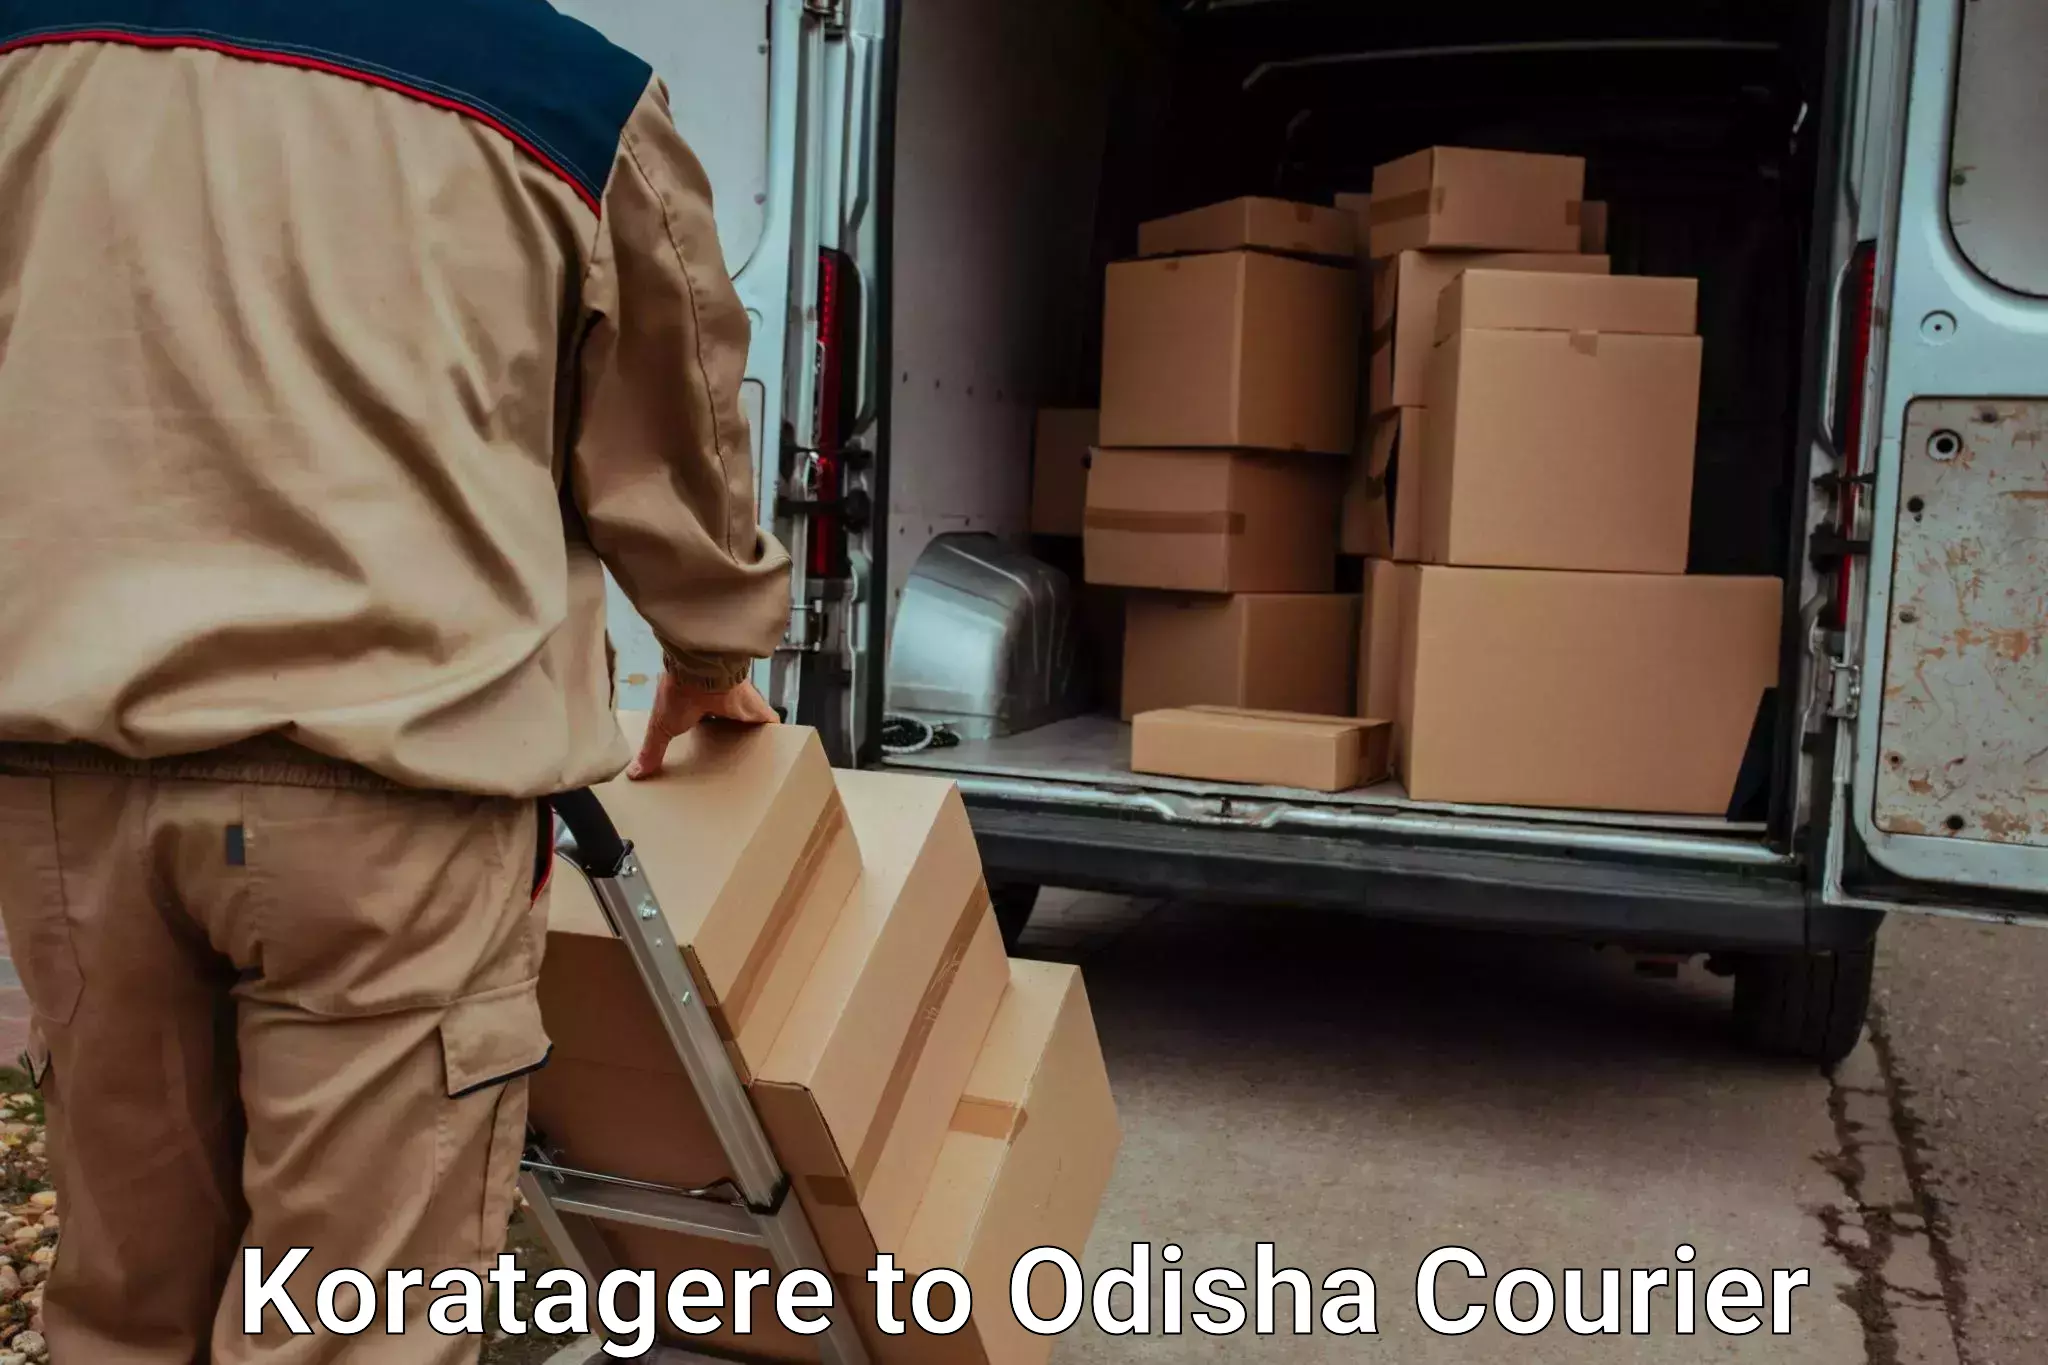 Luggage delivery network Koratagere to Jaraka